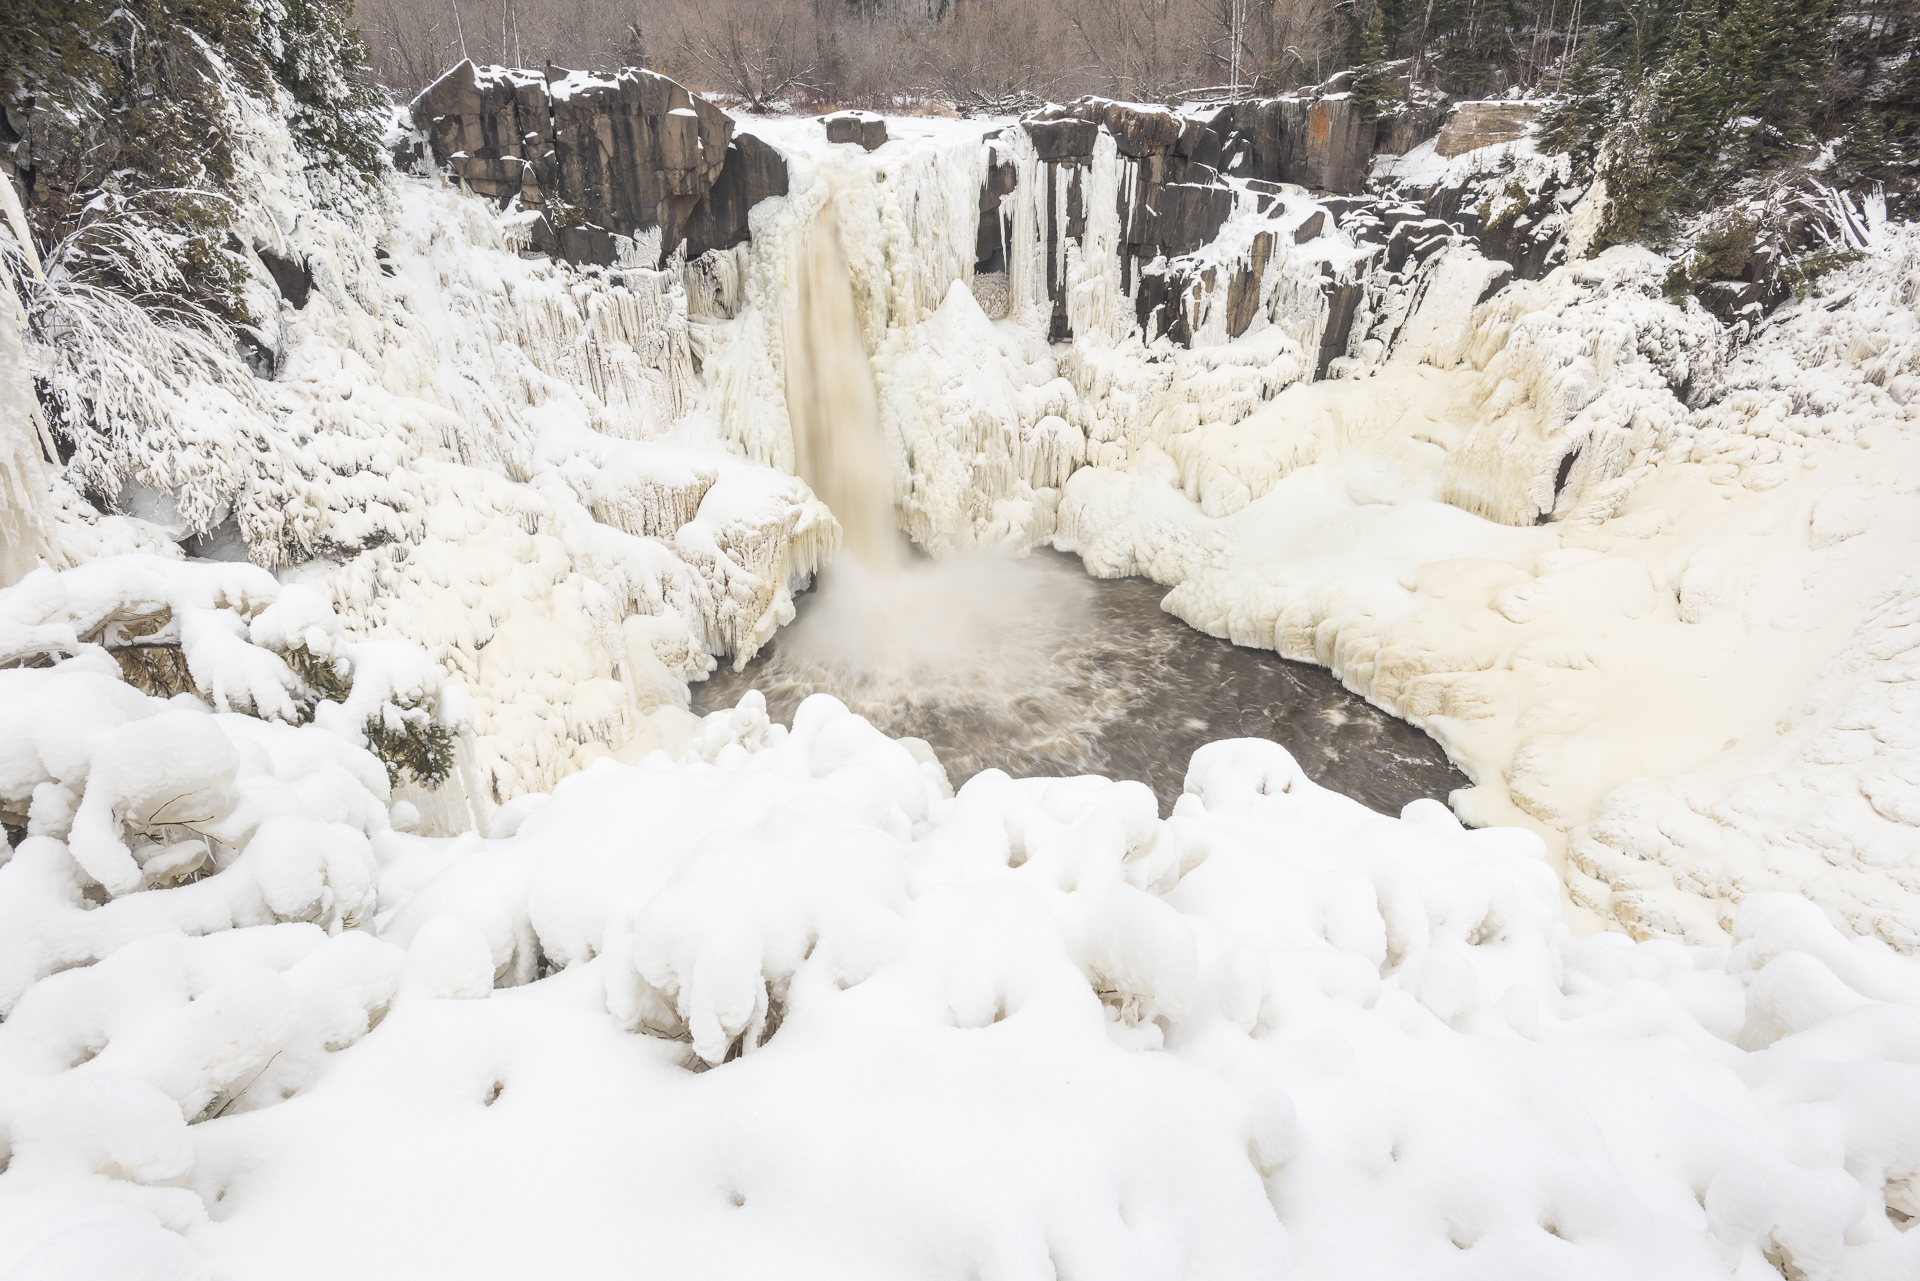 Winter wonderland: partially frozen Pigeon Falls.